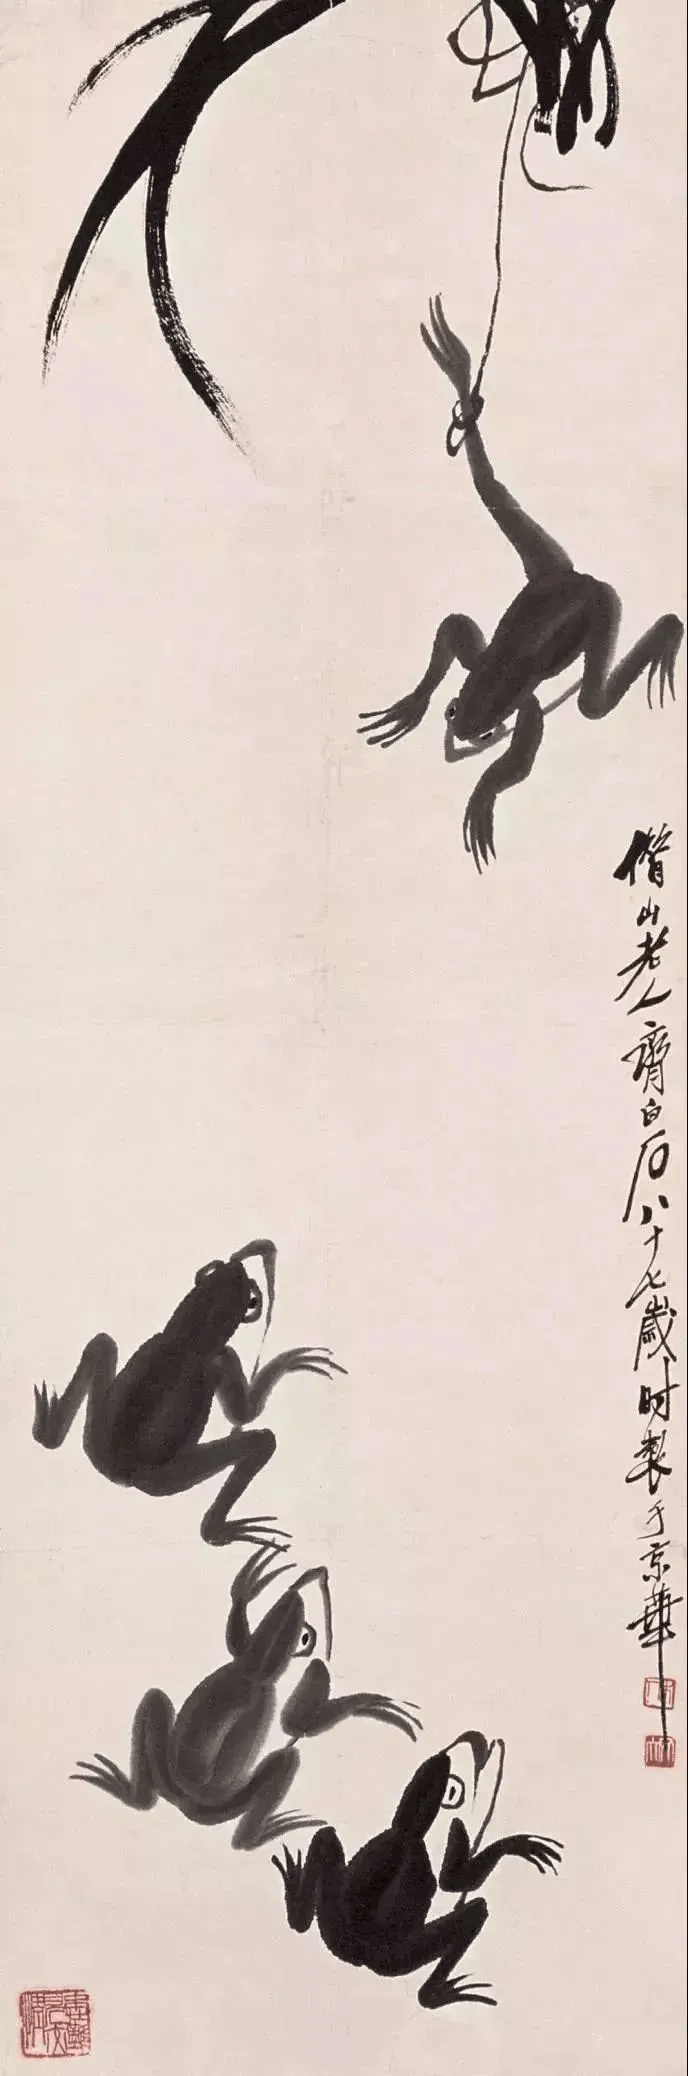 居高声远齐白石的花鸟画传承了中国花鸟画艺术传统与审美并加以创新